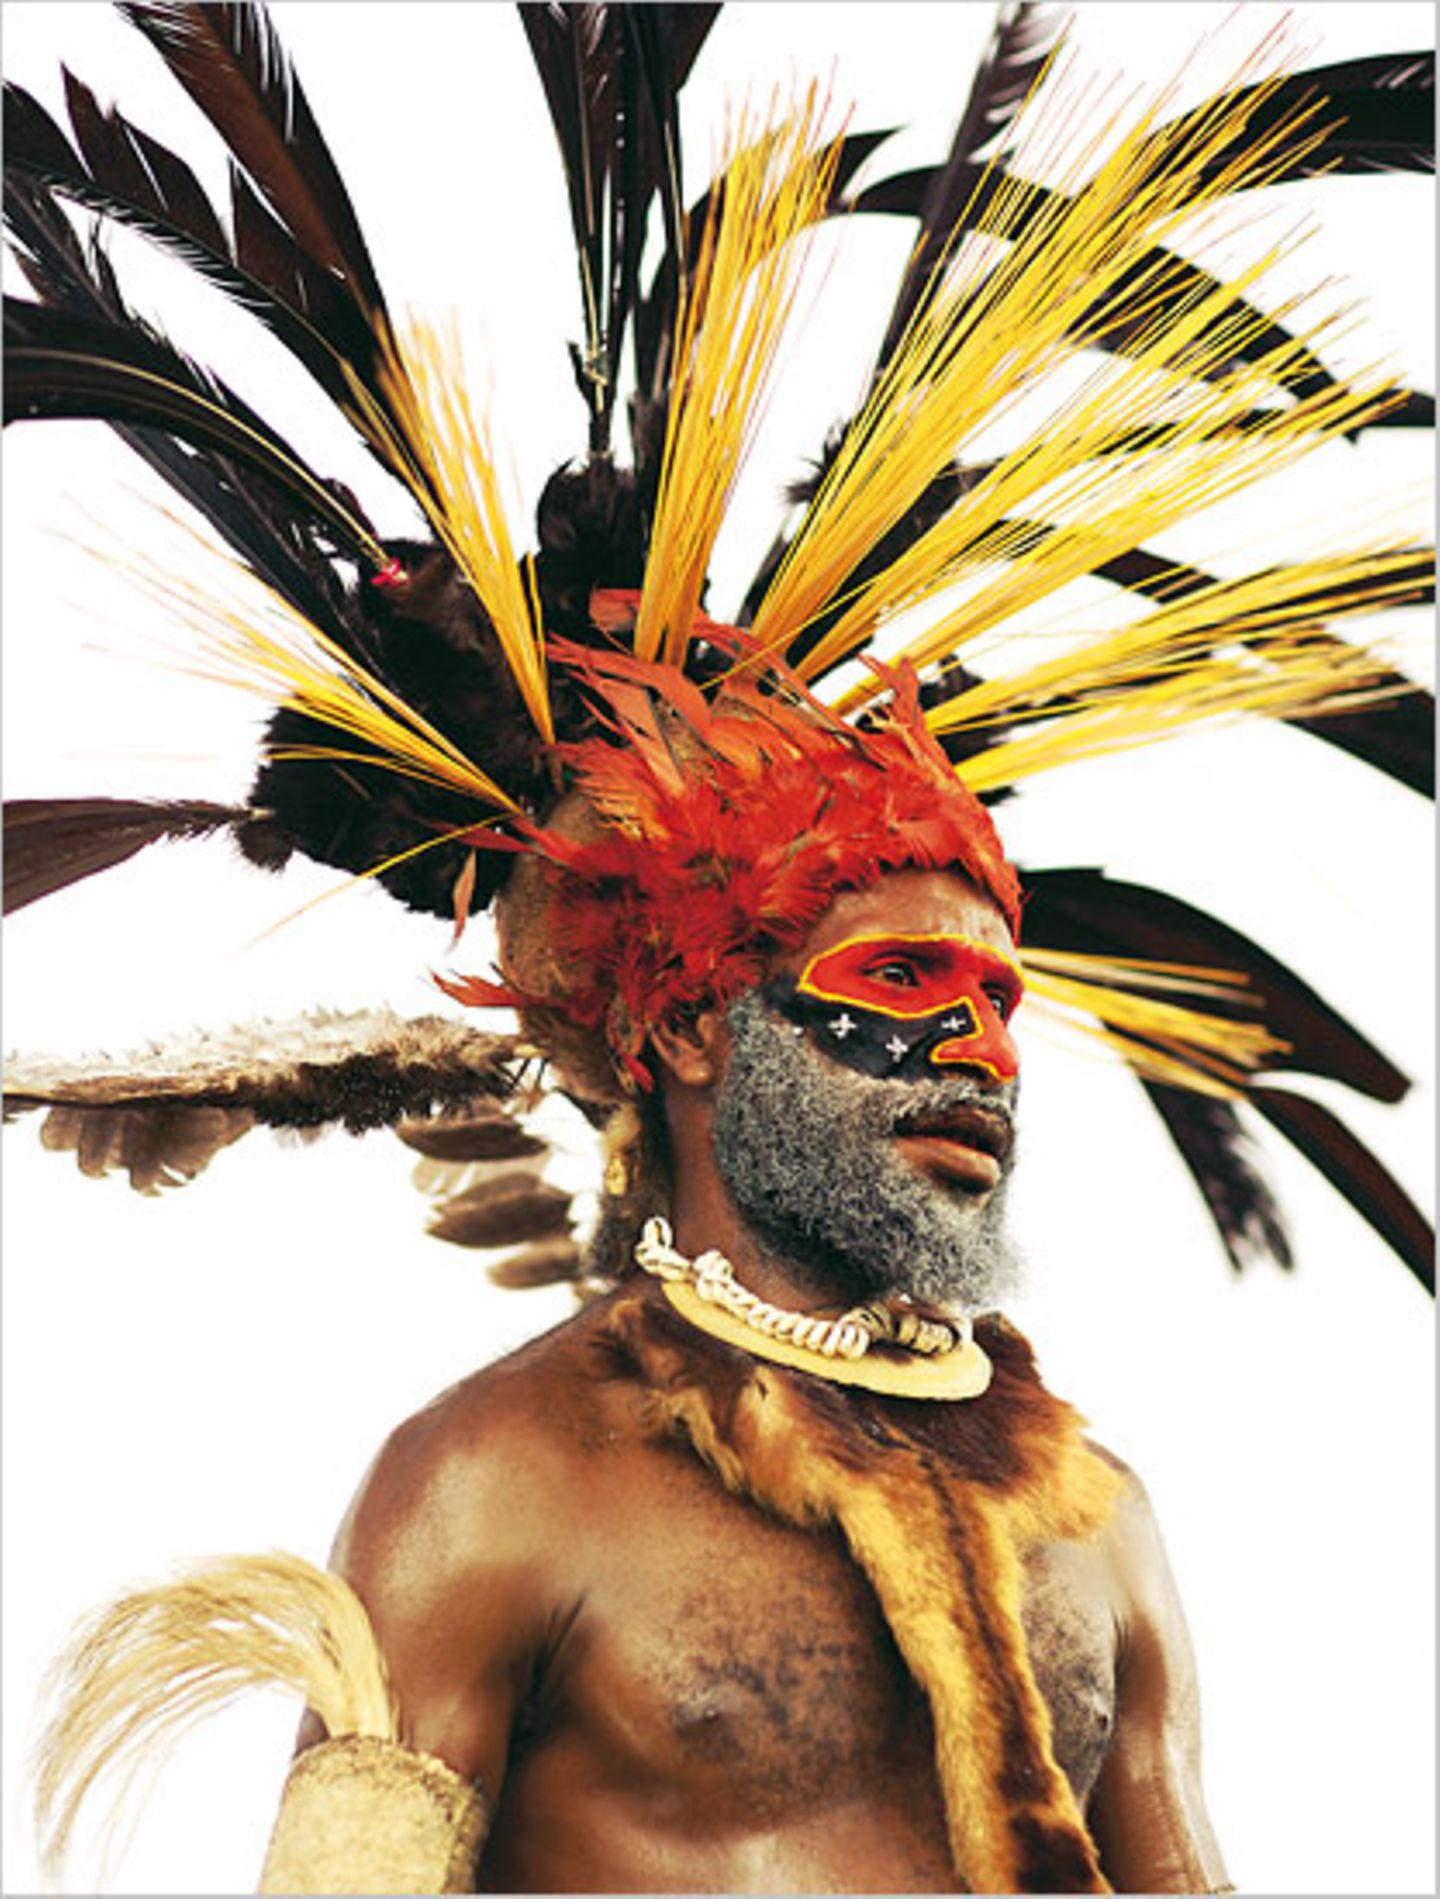 Fotogalerie: Tanzfeste auf Papua-Neuguinea - Bild 7